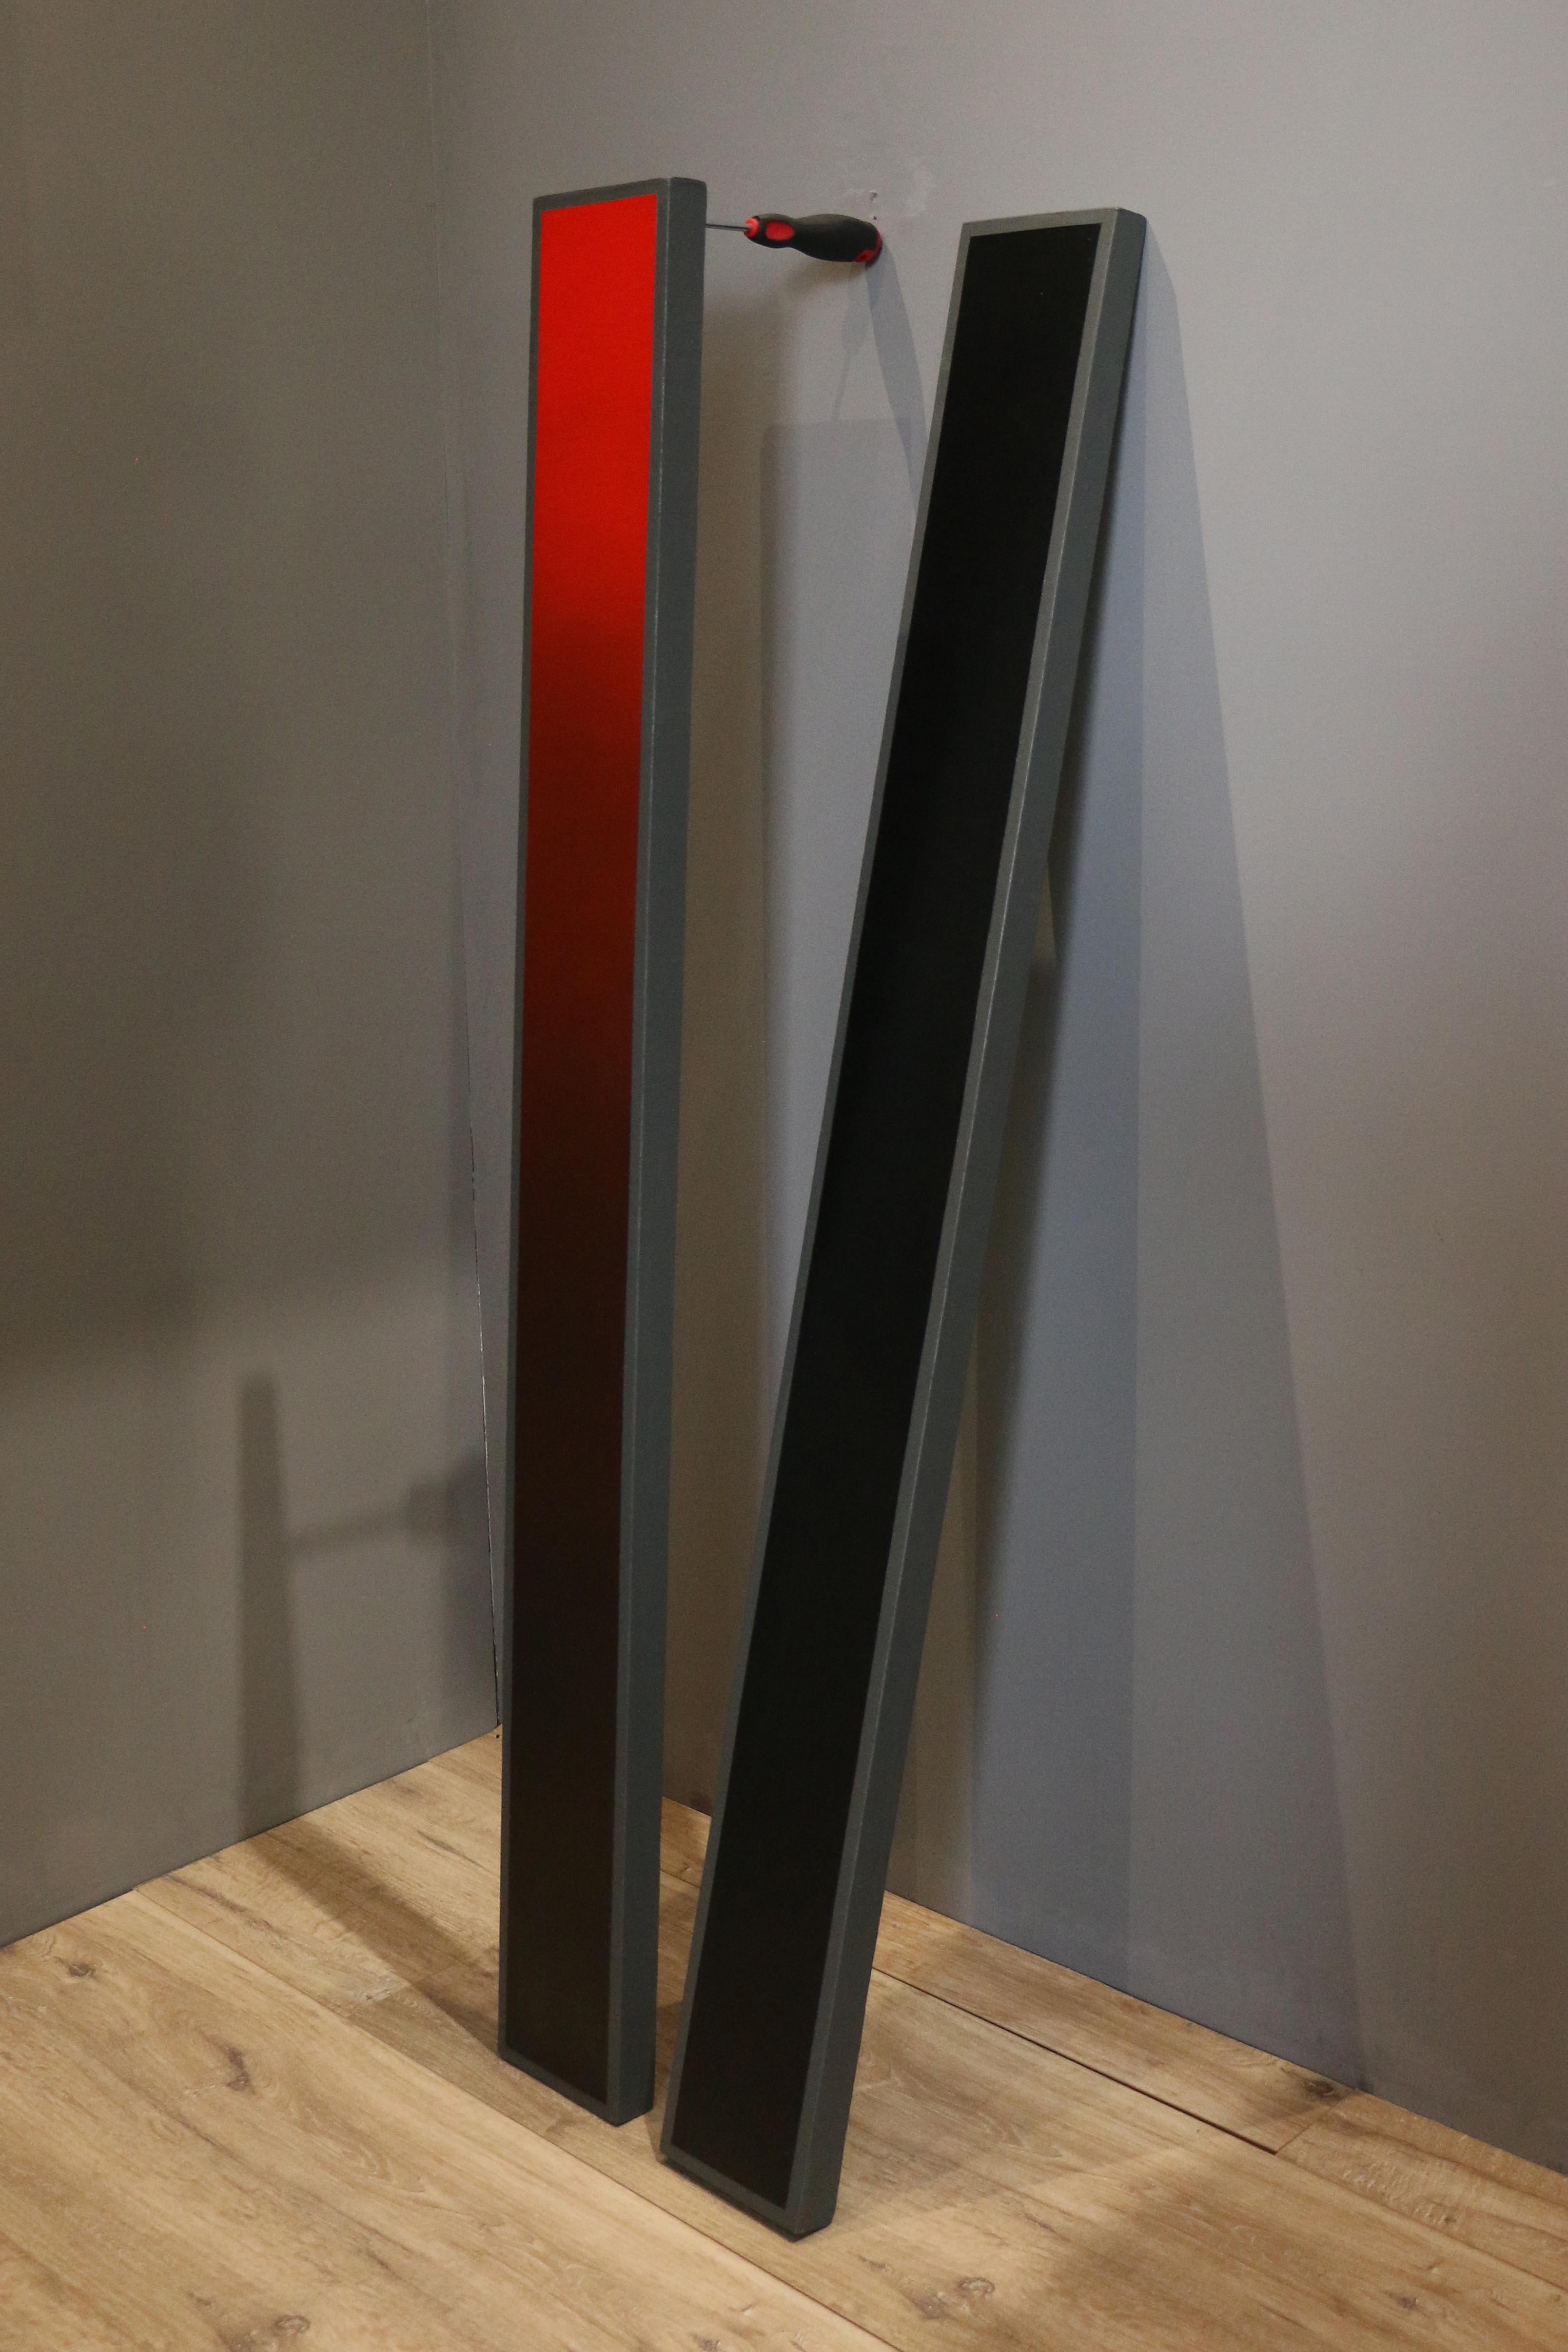 Jose Ricardo Contreras Gonzalez Abstract Sculpture - Saturación, Luminosidad & Destornillador. From The Composition with Tools series